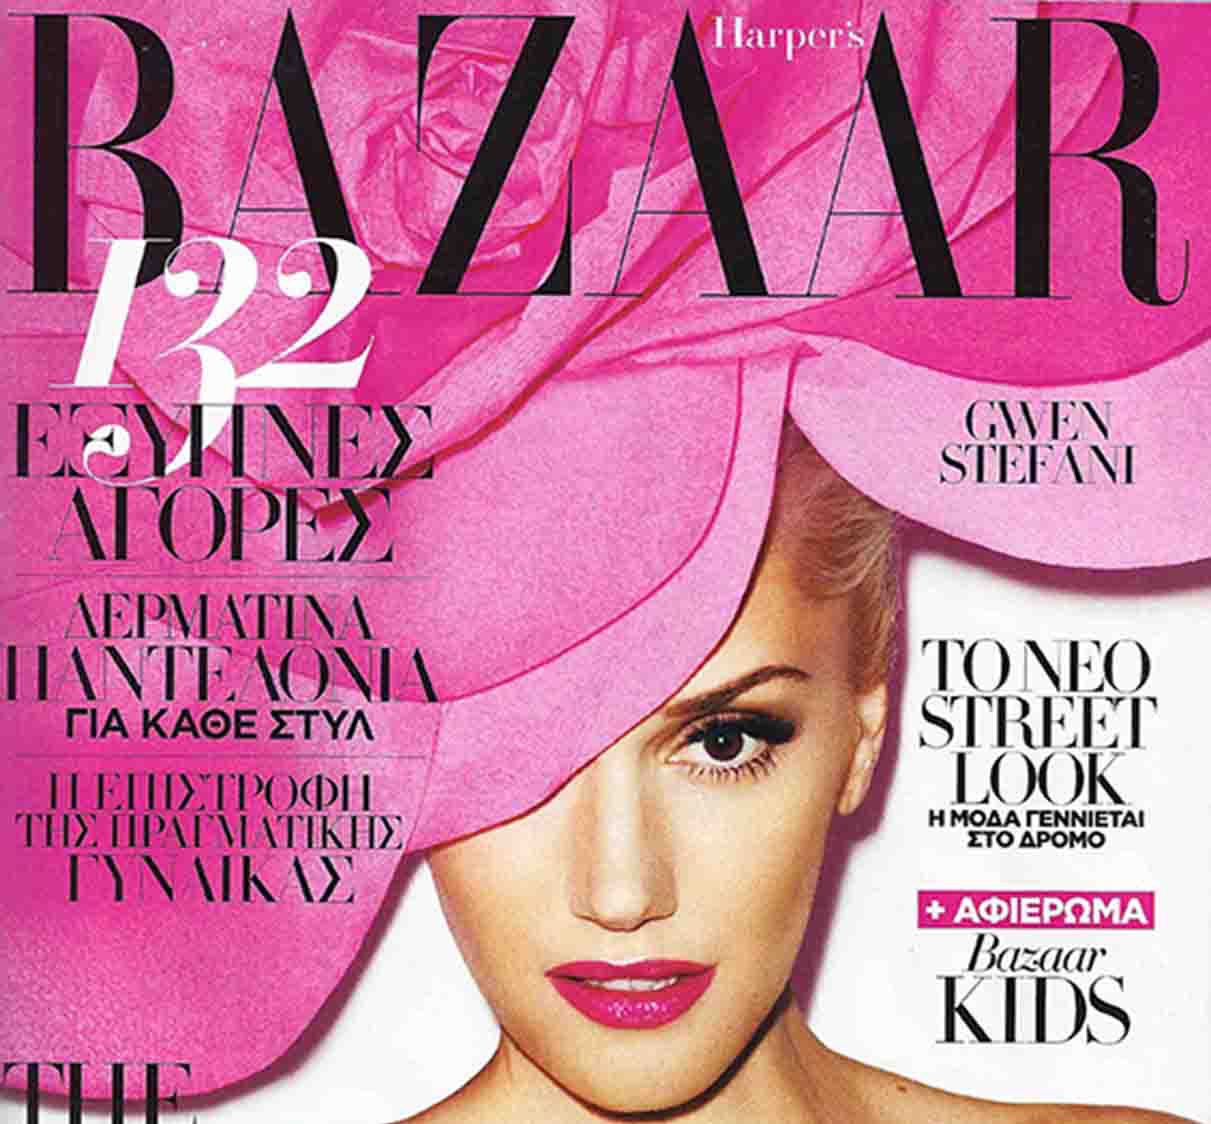 Harper's Bazaar October 2012